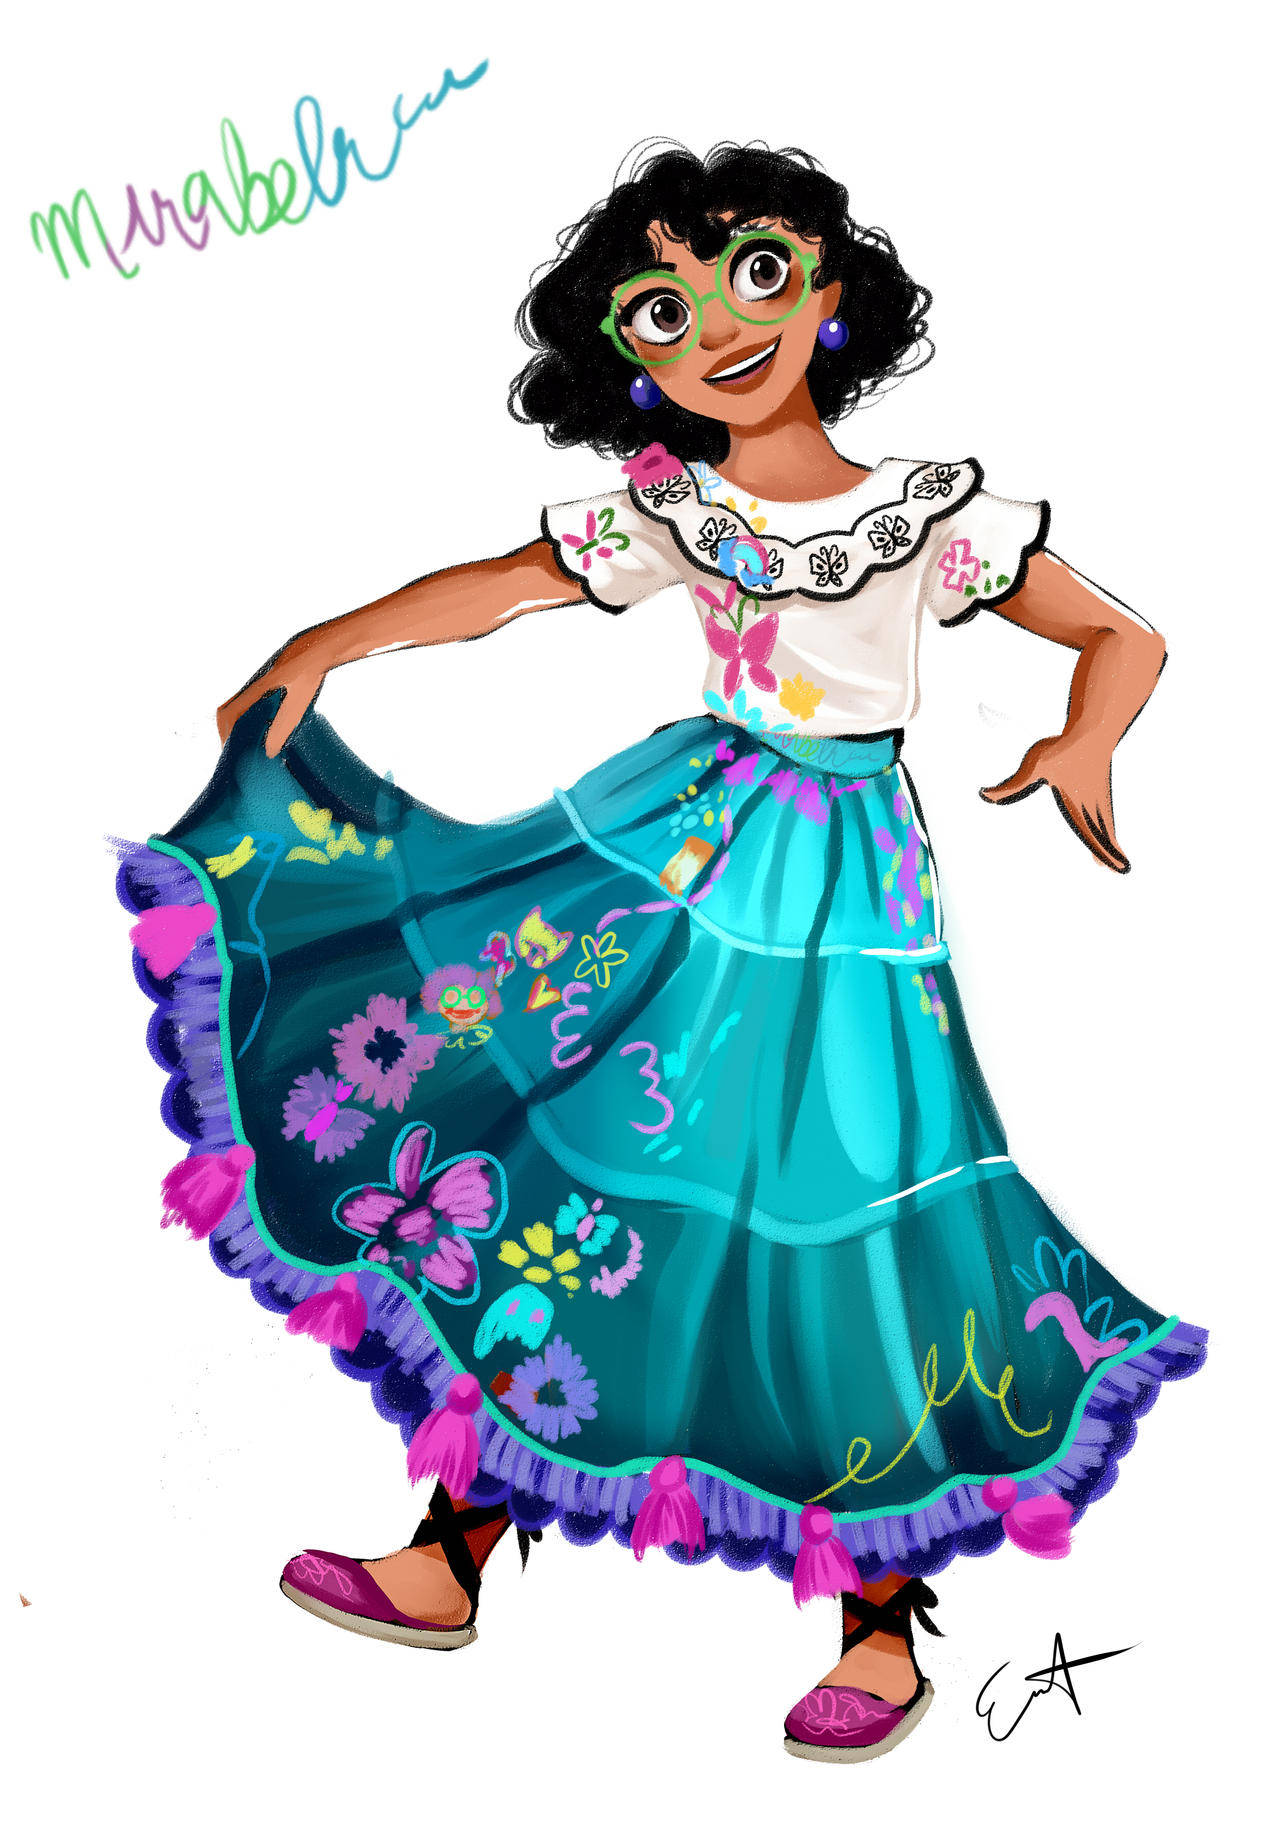 Encanto's Mirabel Madrigal In Her Vibrant Skirt